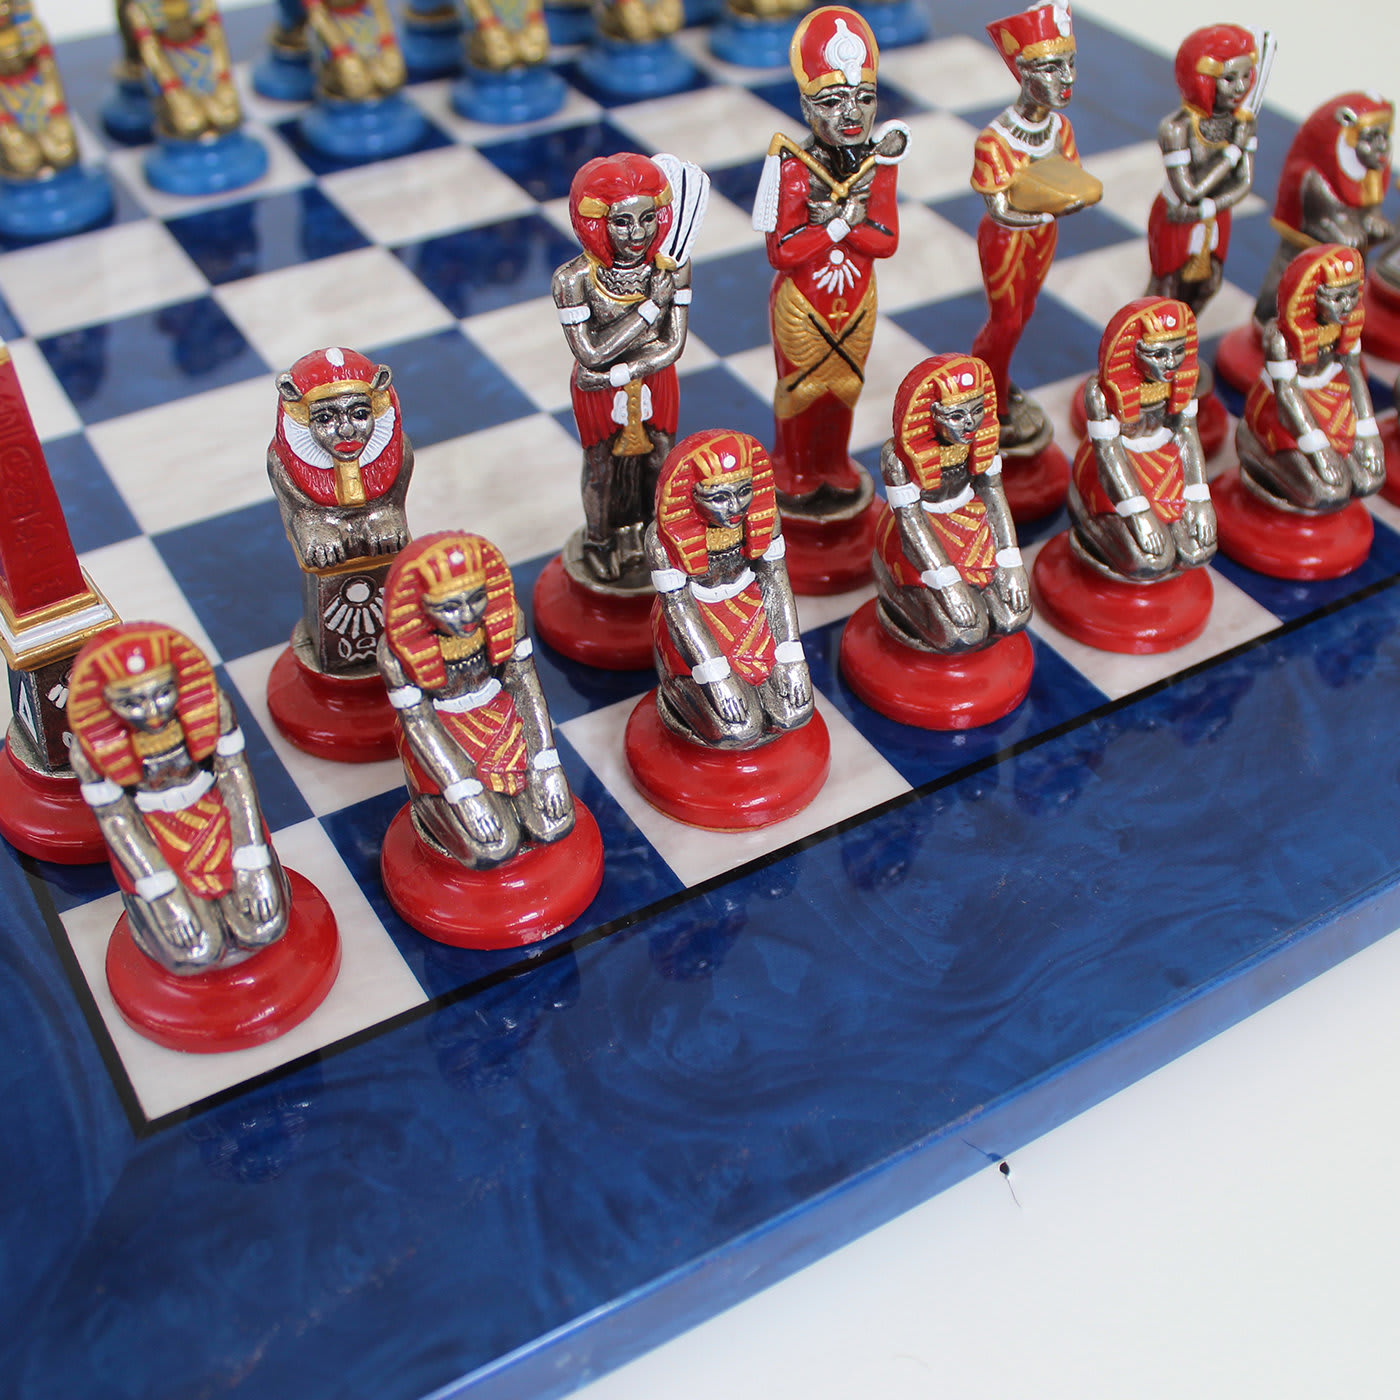 Egyptian Style Chess Set - Italfama